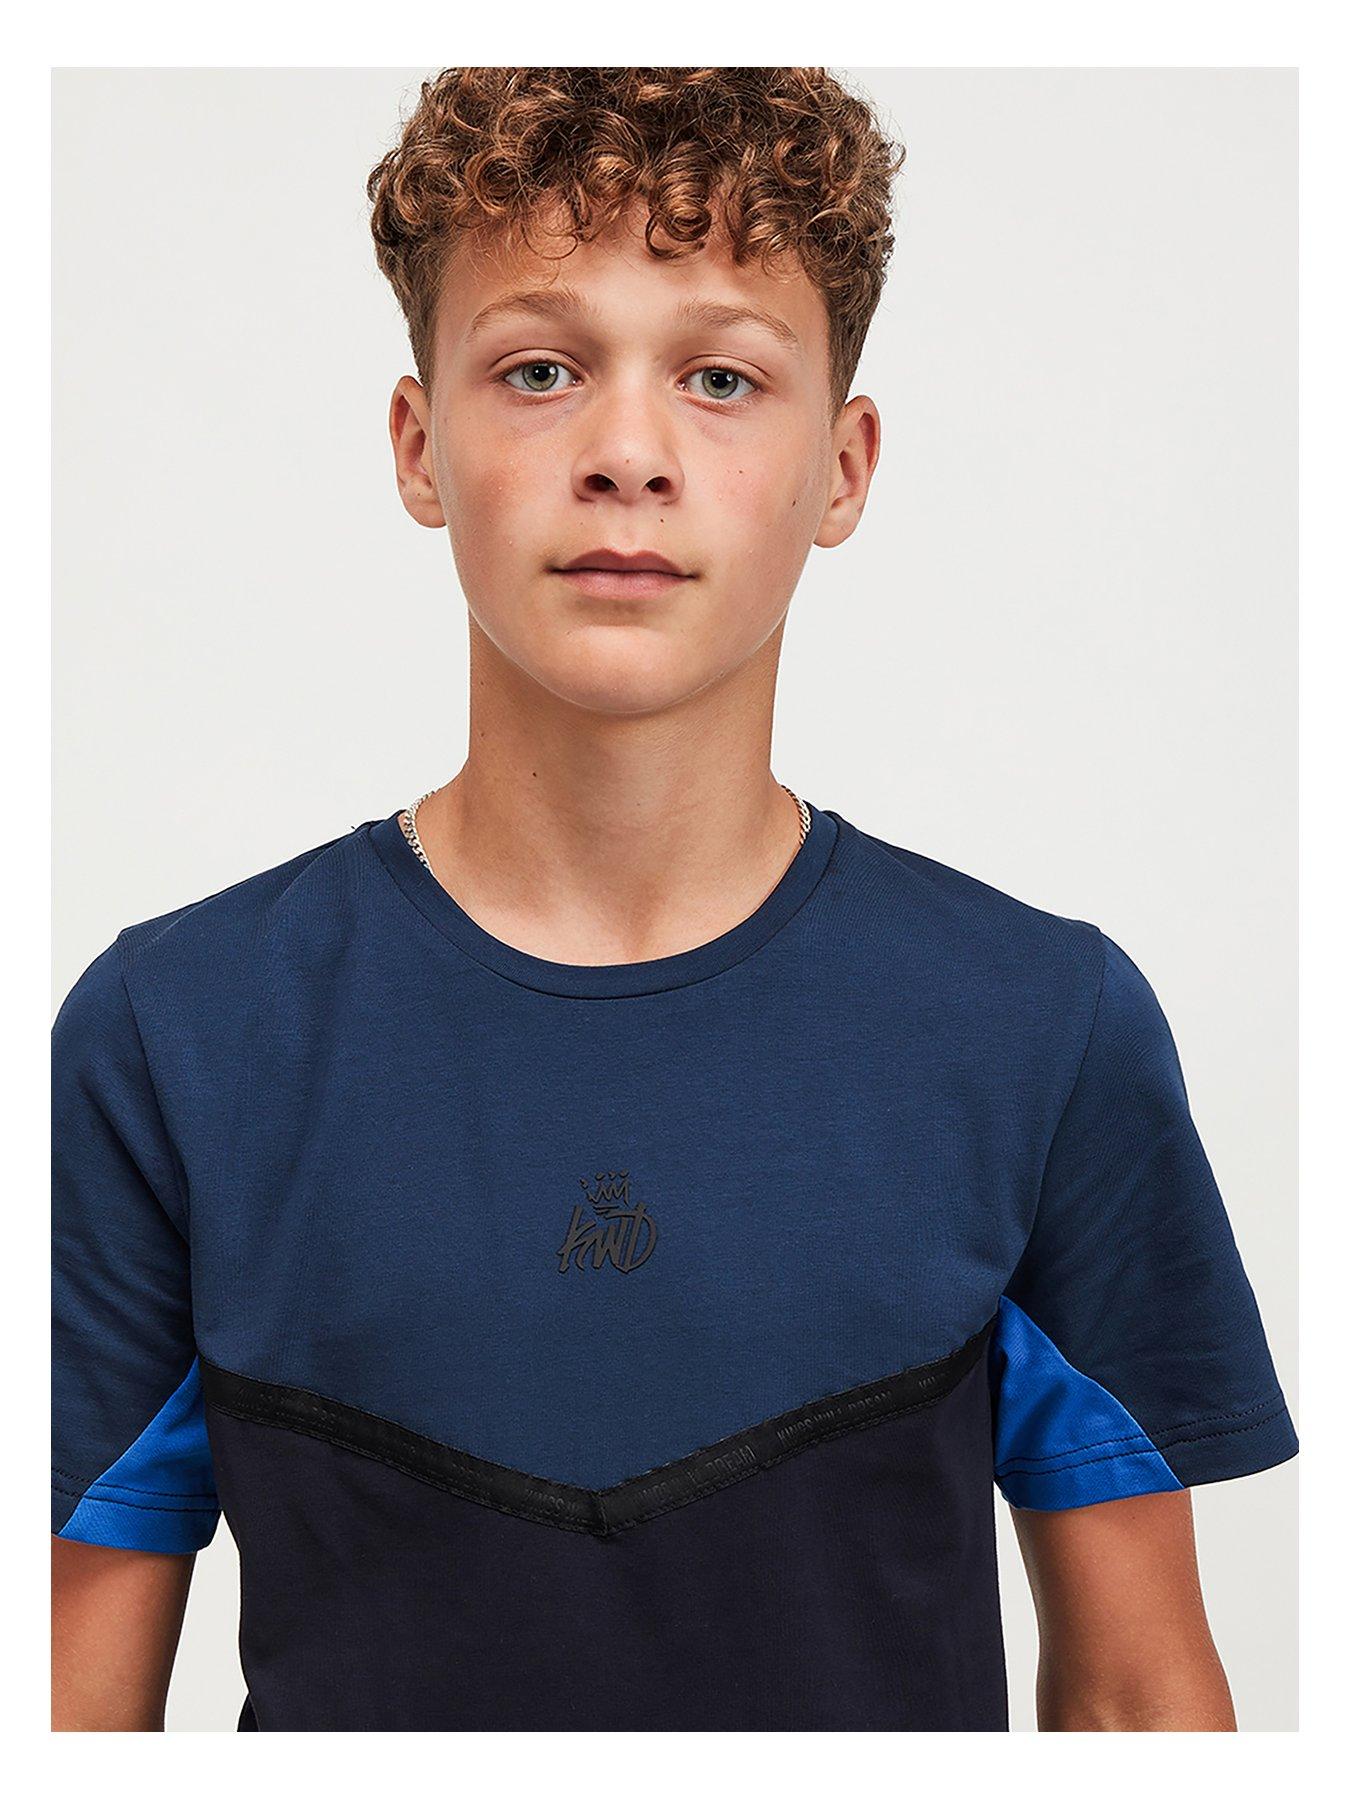 Boys Clothes Junior Dornan T-Shirt - Navy